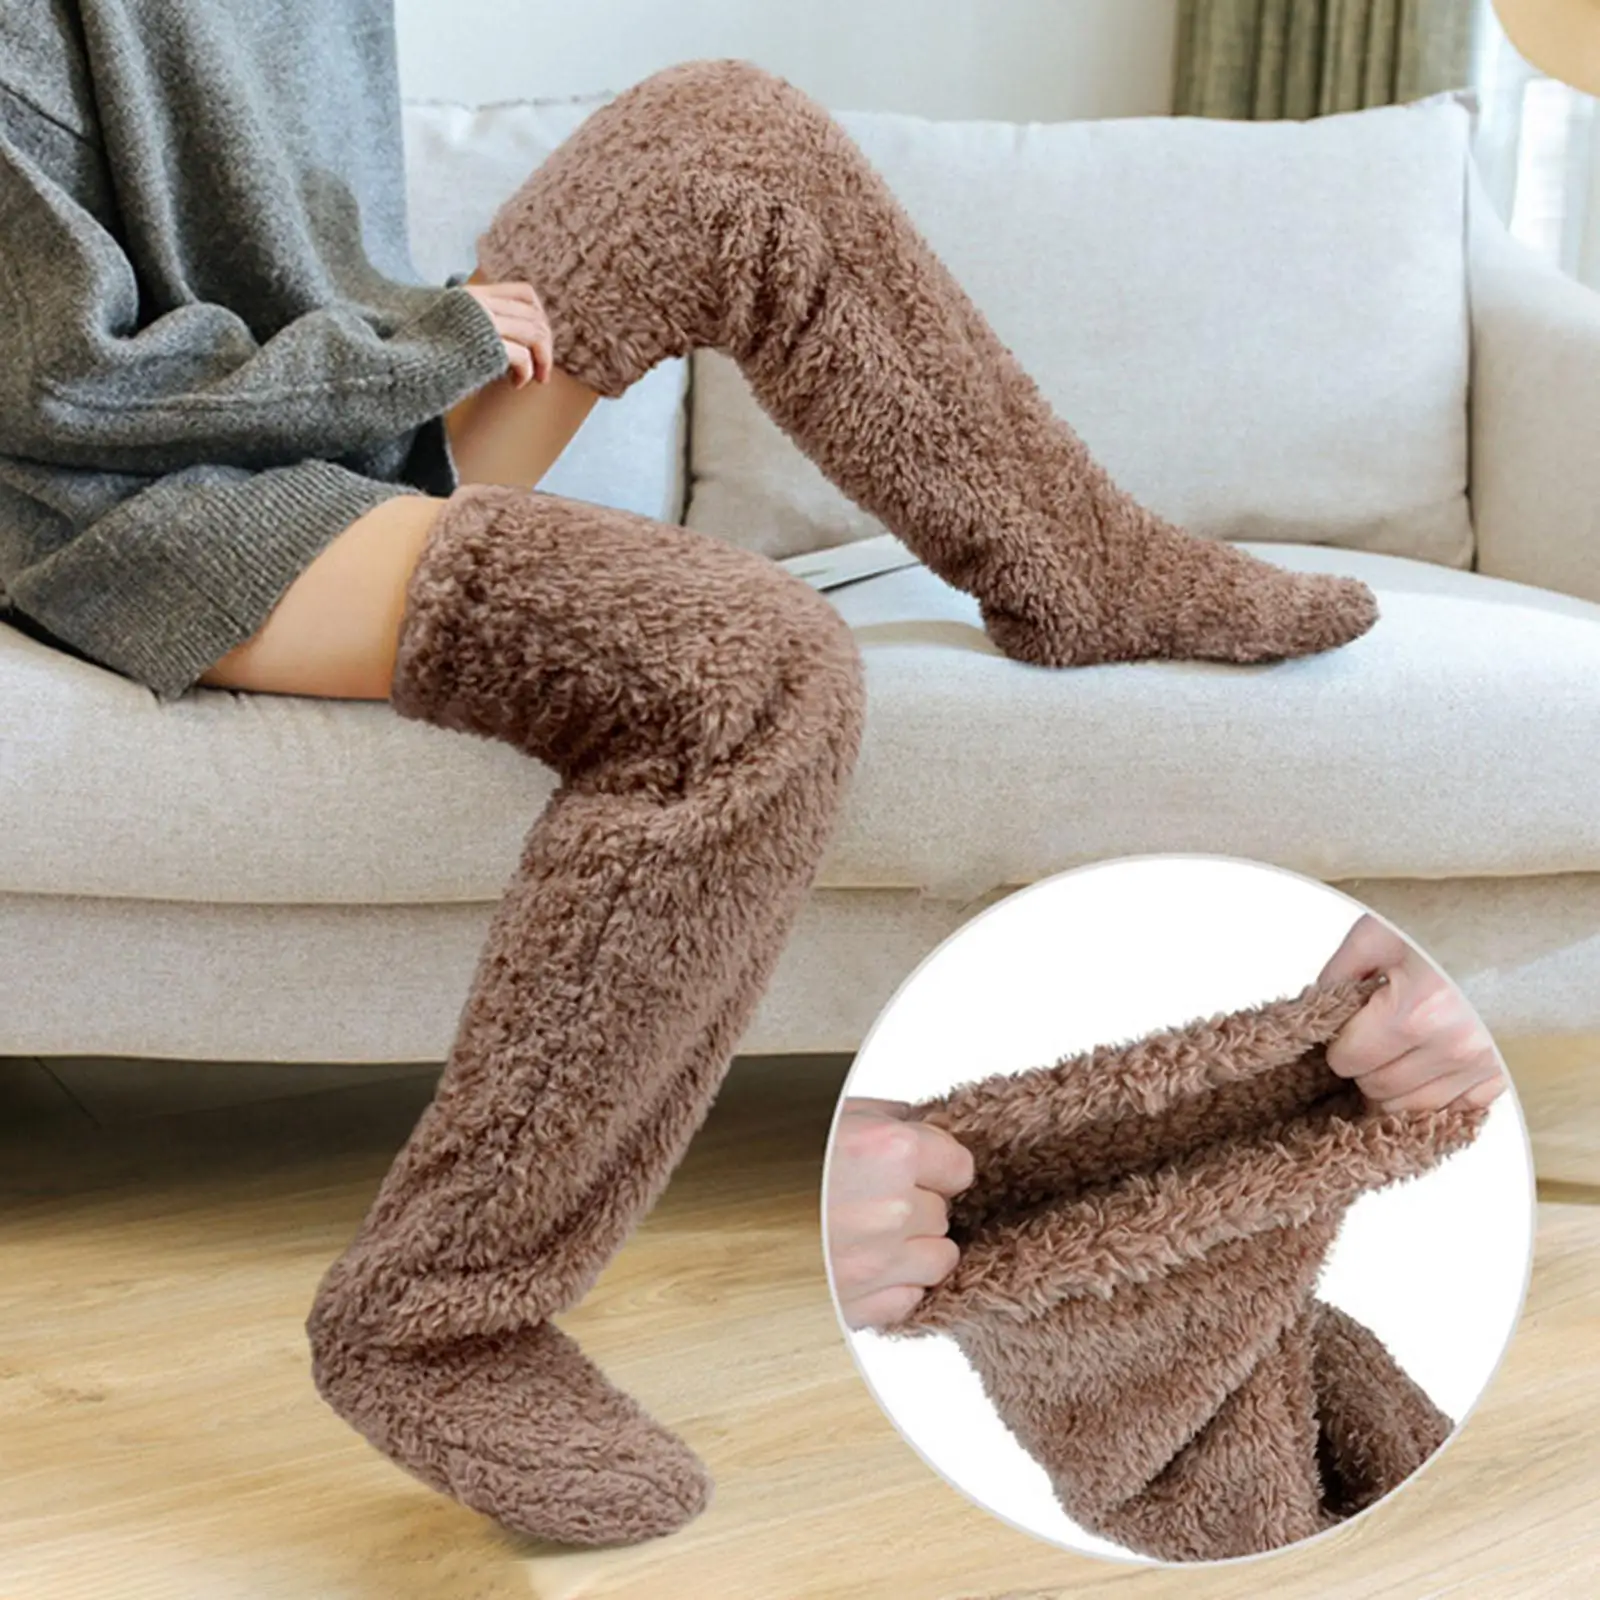 Thigh High Socks Over Knee Fuzzy Socks Boot Socks Stocking Legging Stocking Plush Leg Warmers for Office Living Room Women Kids